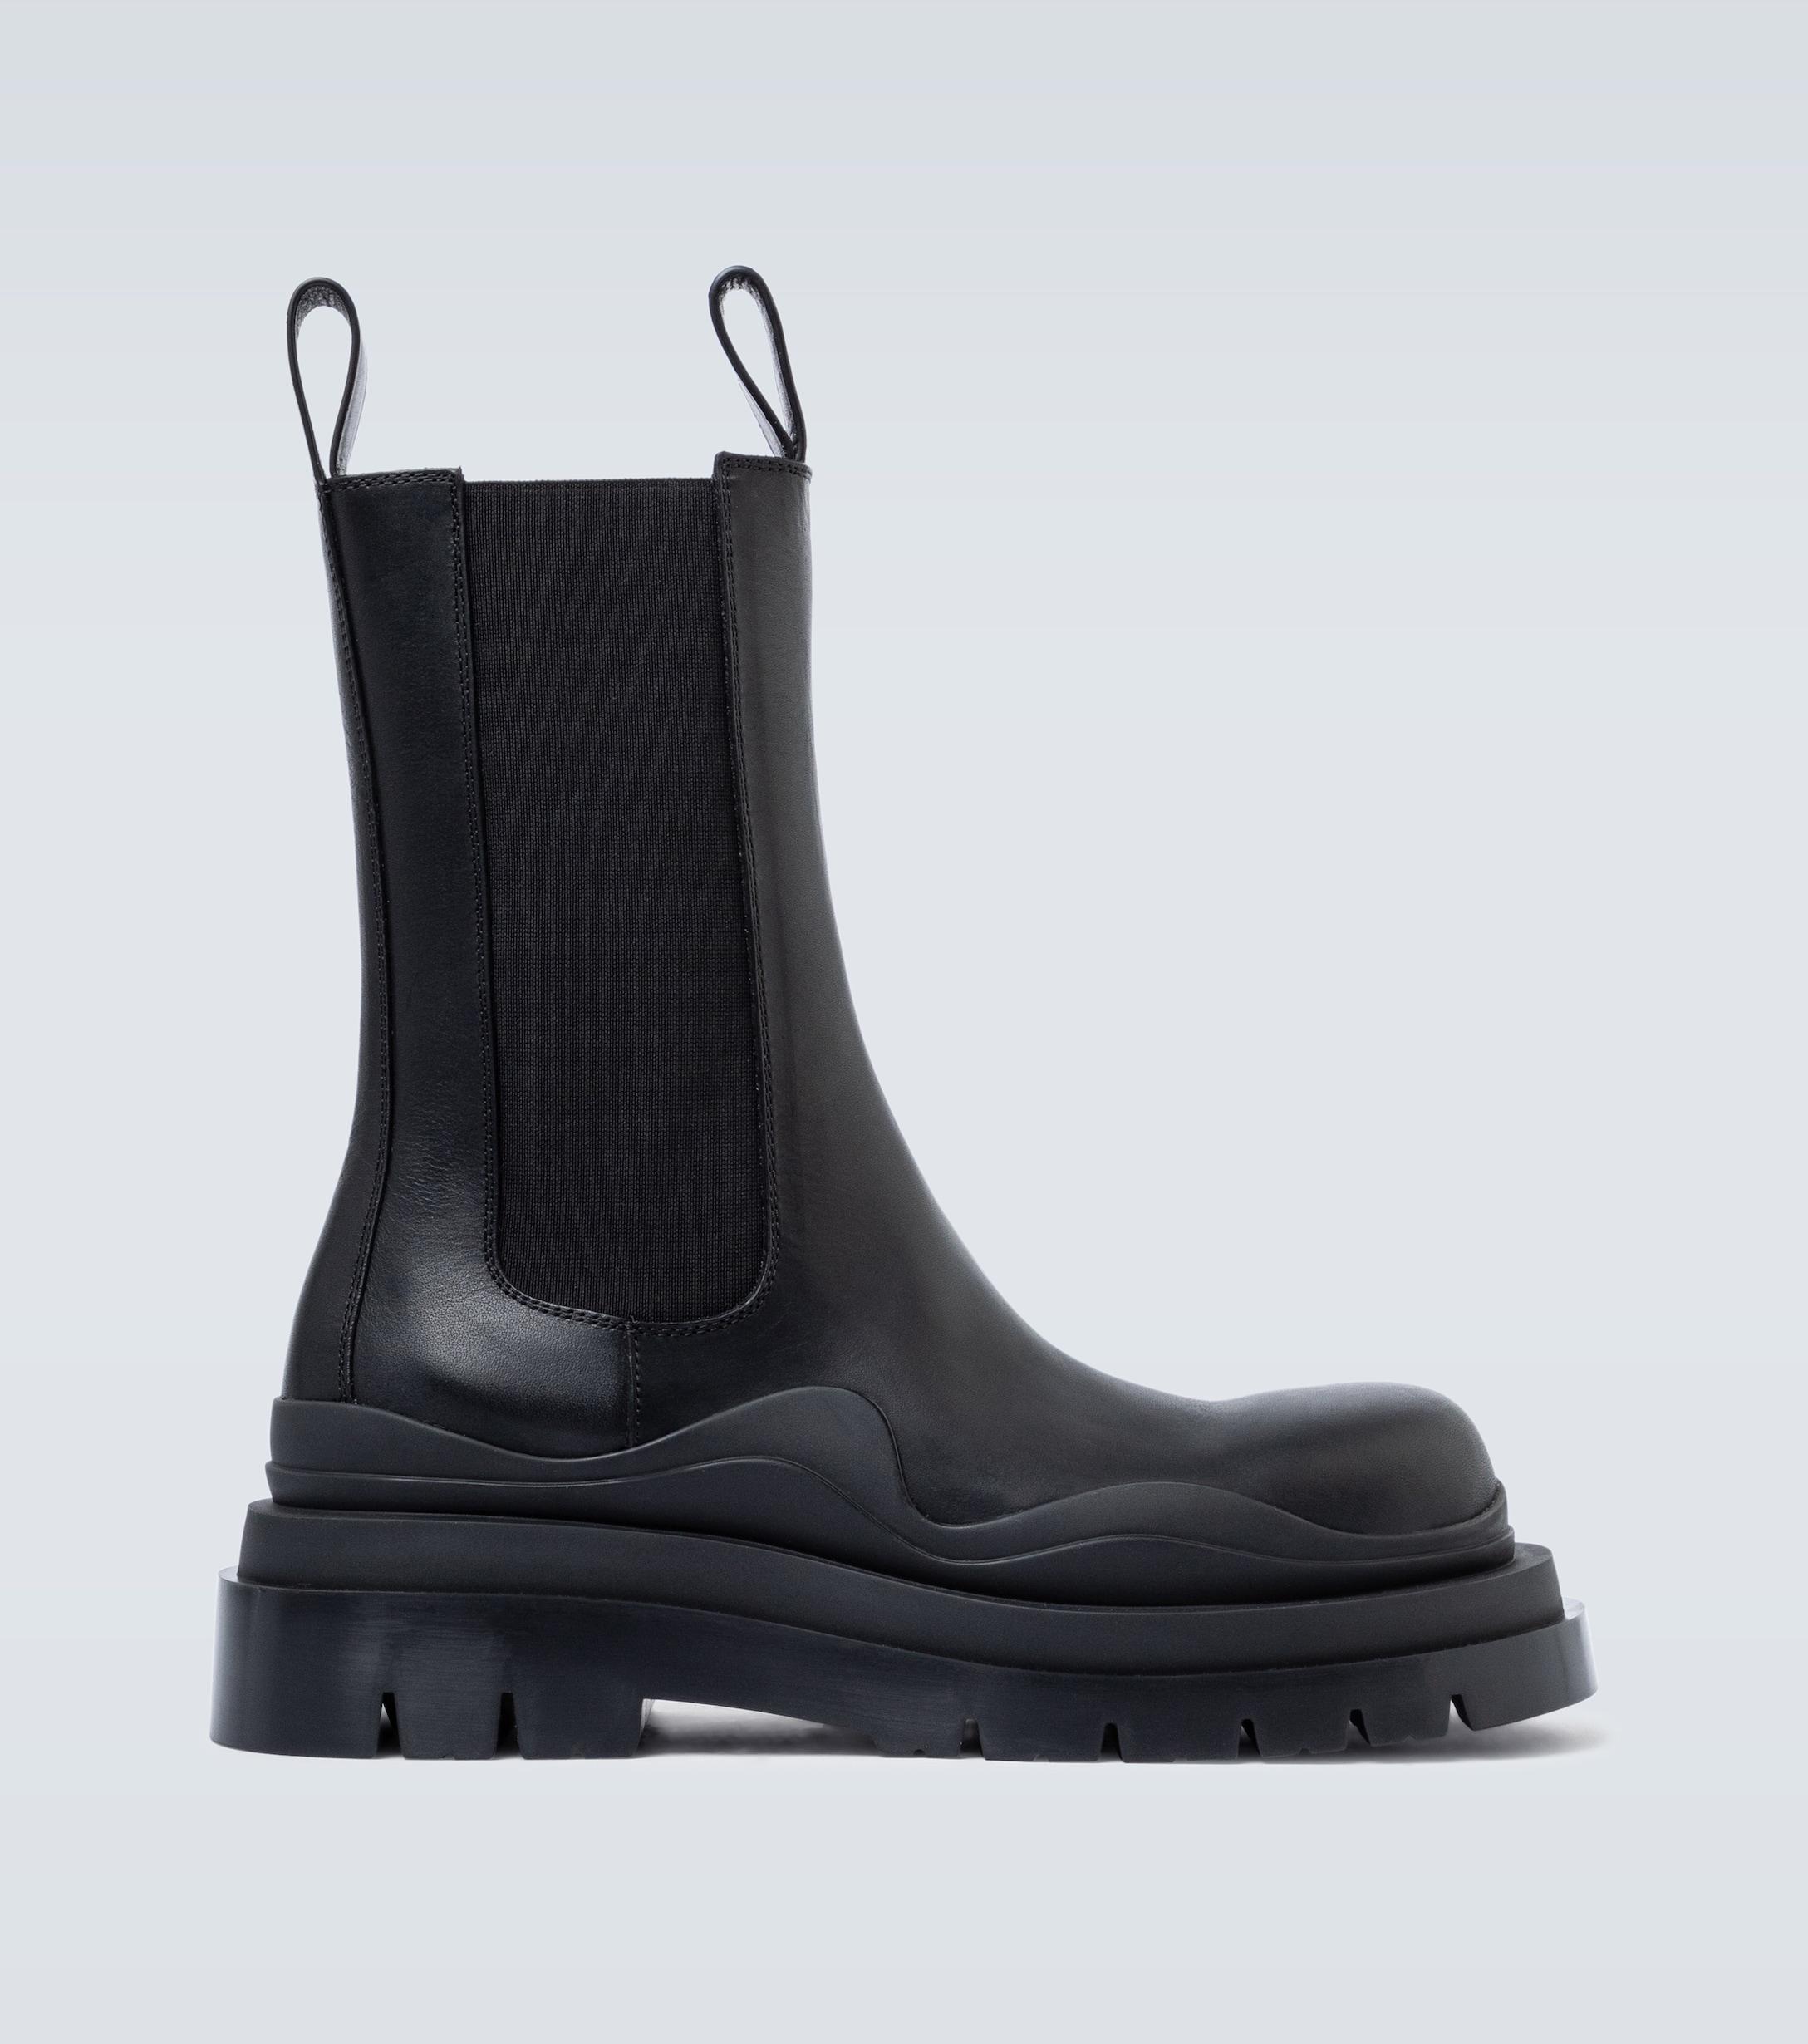 Bottega Veneta Bv Tire Leather Boots in Black for Men - Lyst